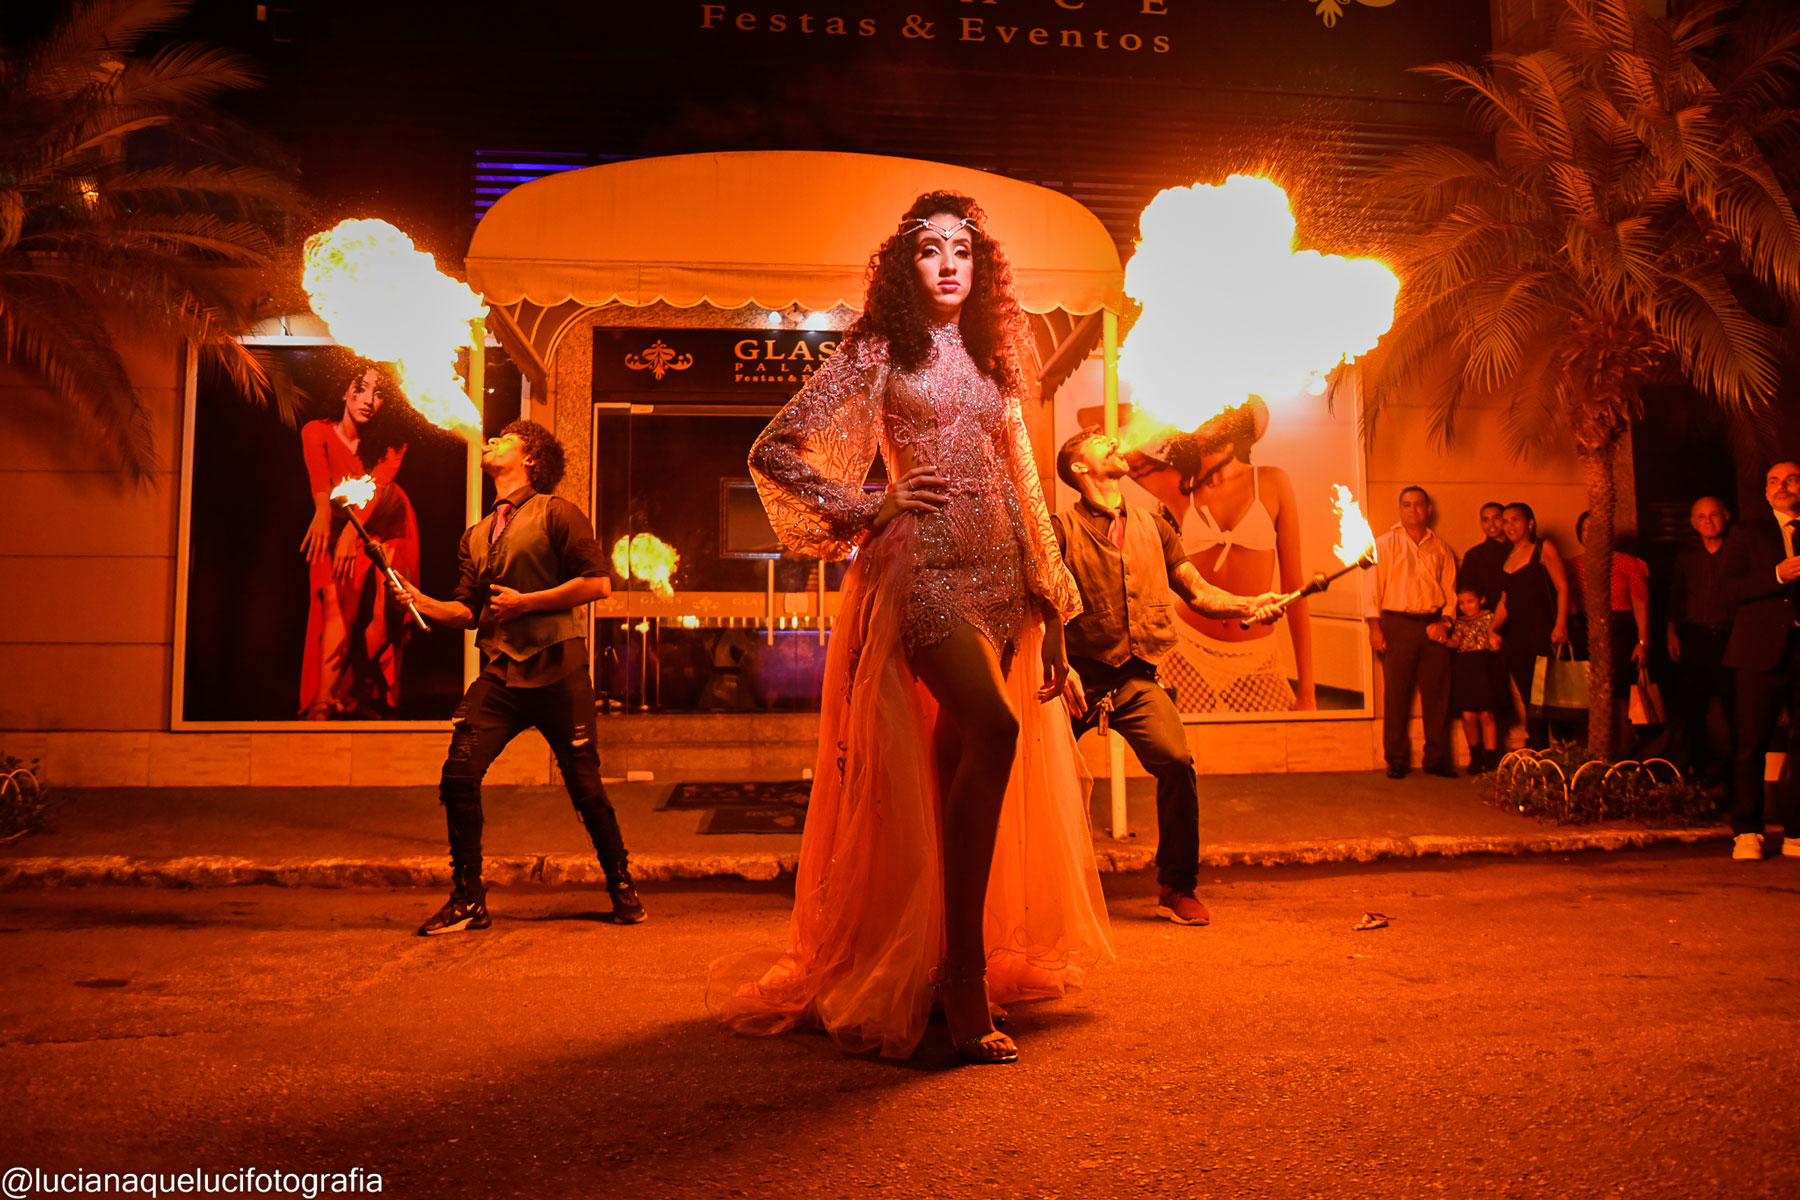 Menina de 15 anos na rua com dois homens ao fundo cuspindo fogo no Glass Palace Festas & Eventos